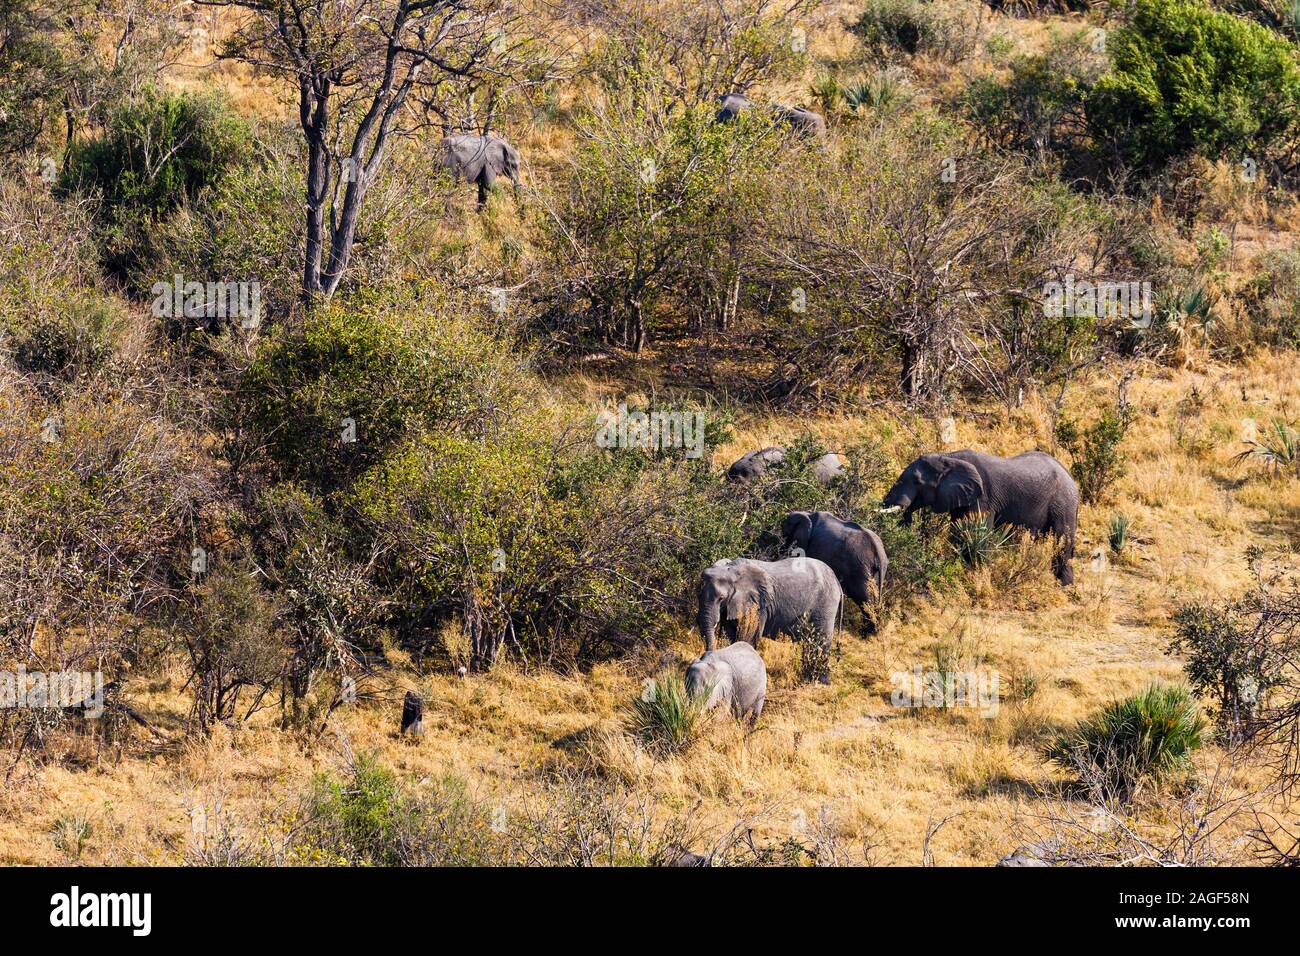 Éléphants herding dans des buissons, savane, vue aérienne, delta d'Okavango, vol en hélicoptère, Botswana, Afrique australe, Afrique Banque D'Images